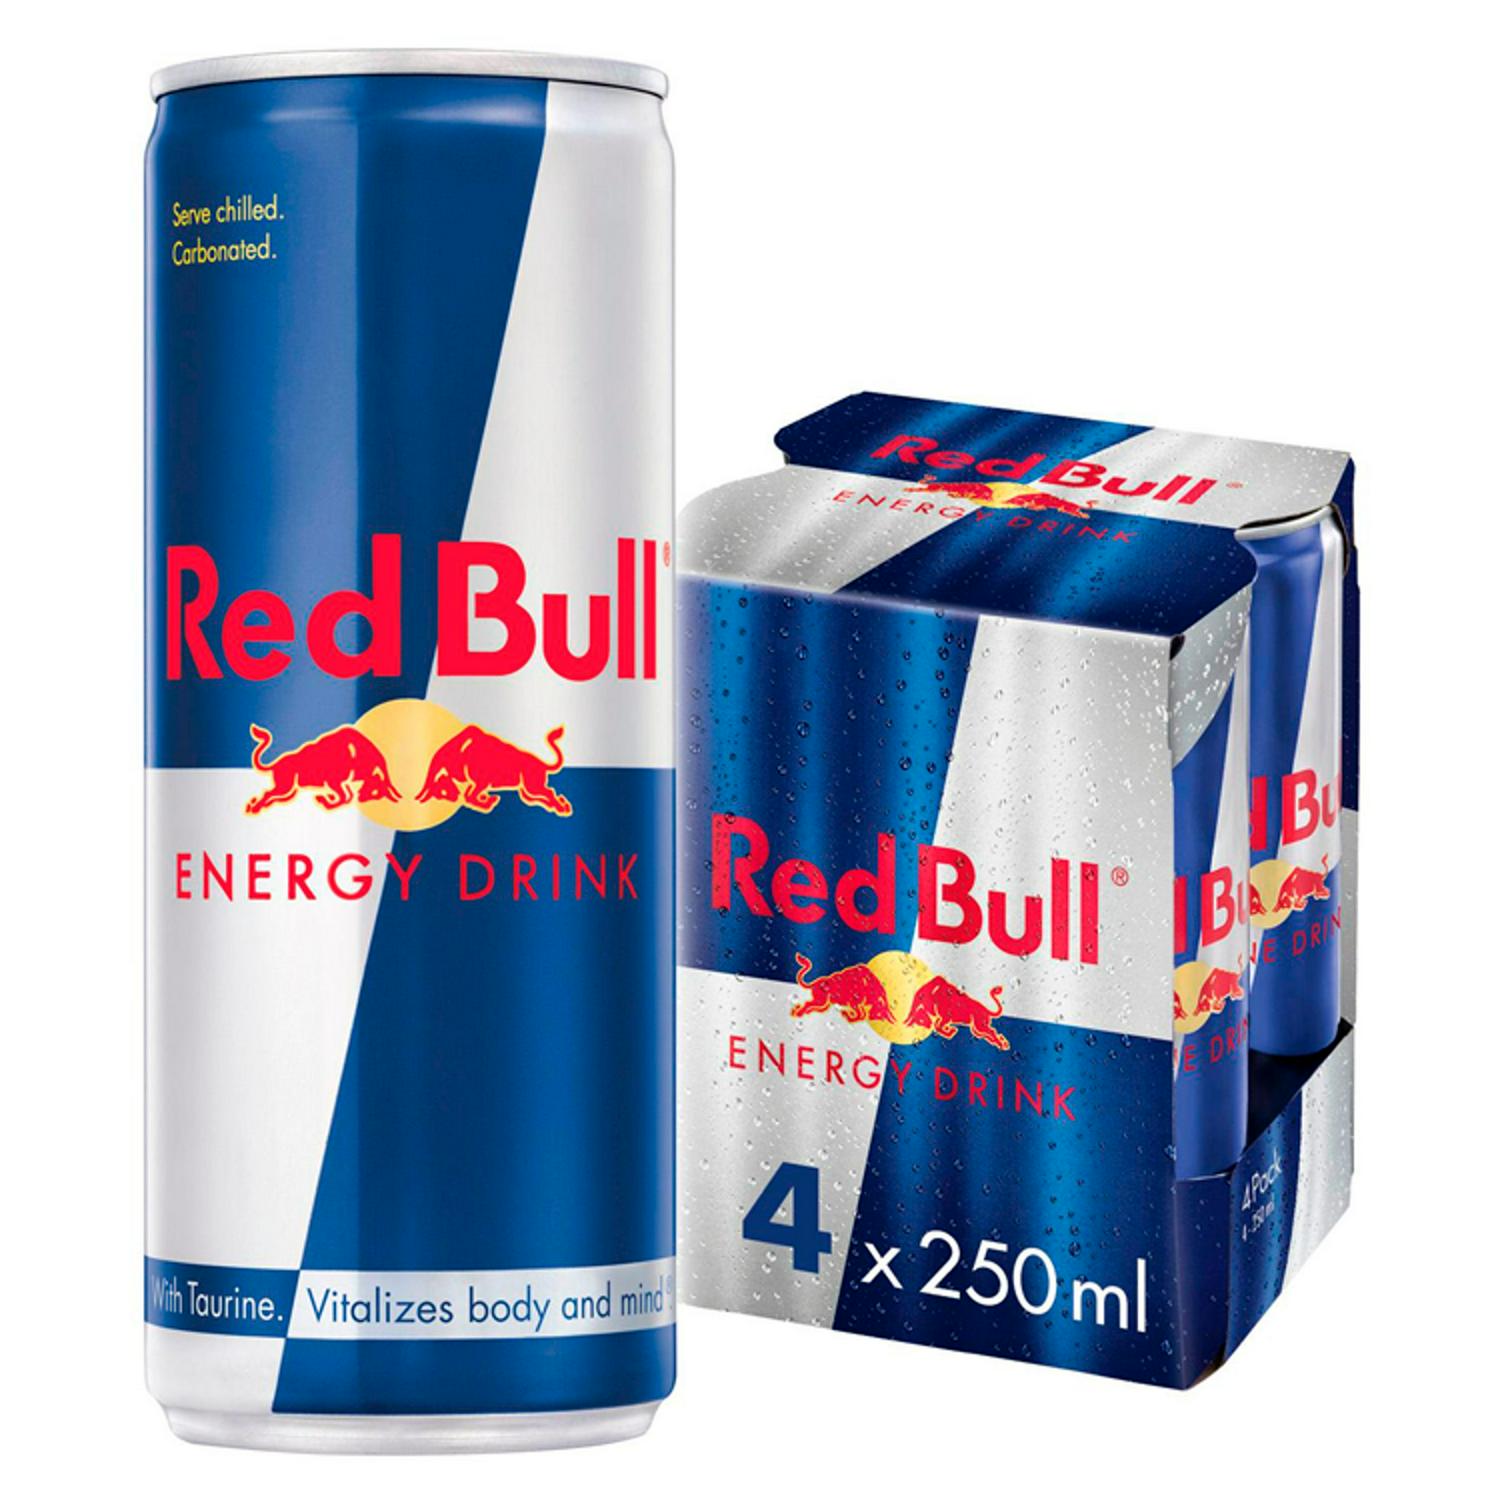 Red Bull Energy Drink 250ml - Pack of 4